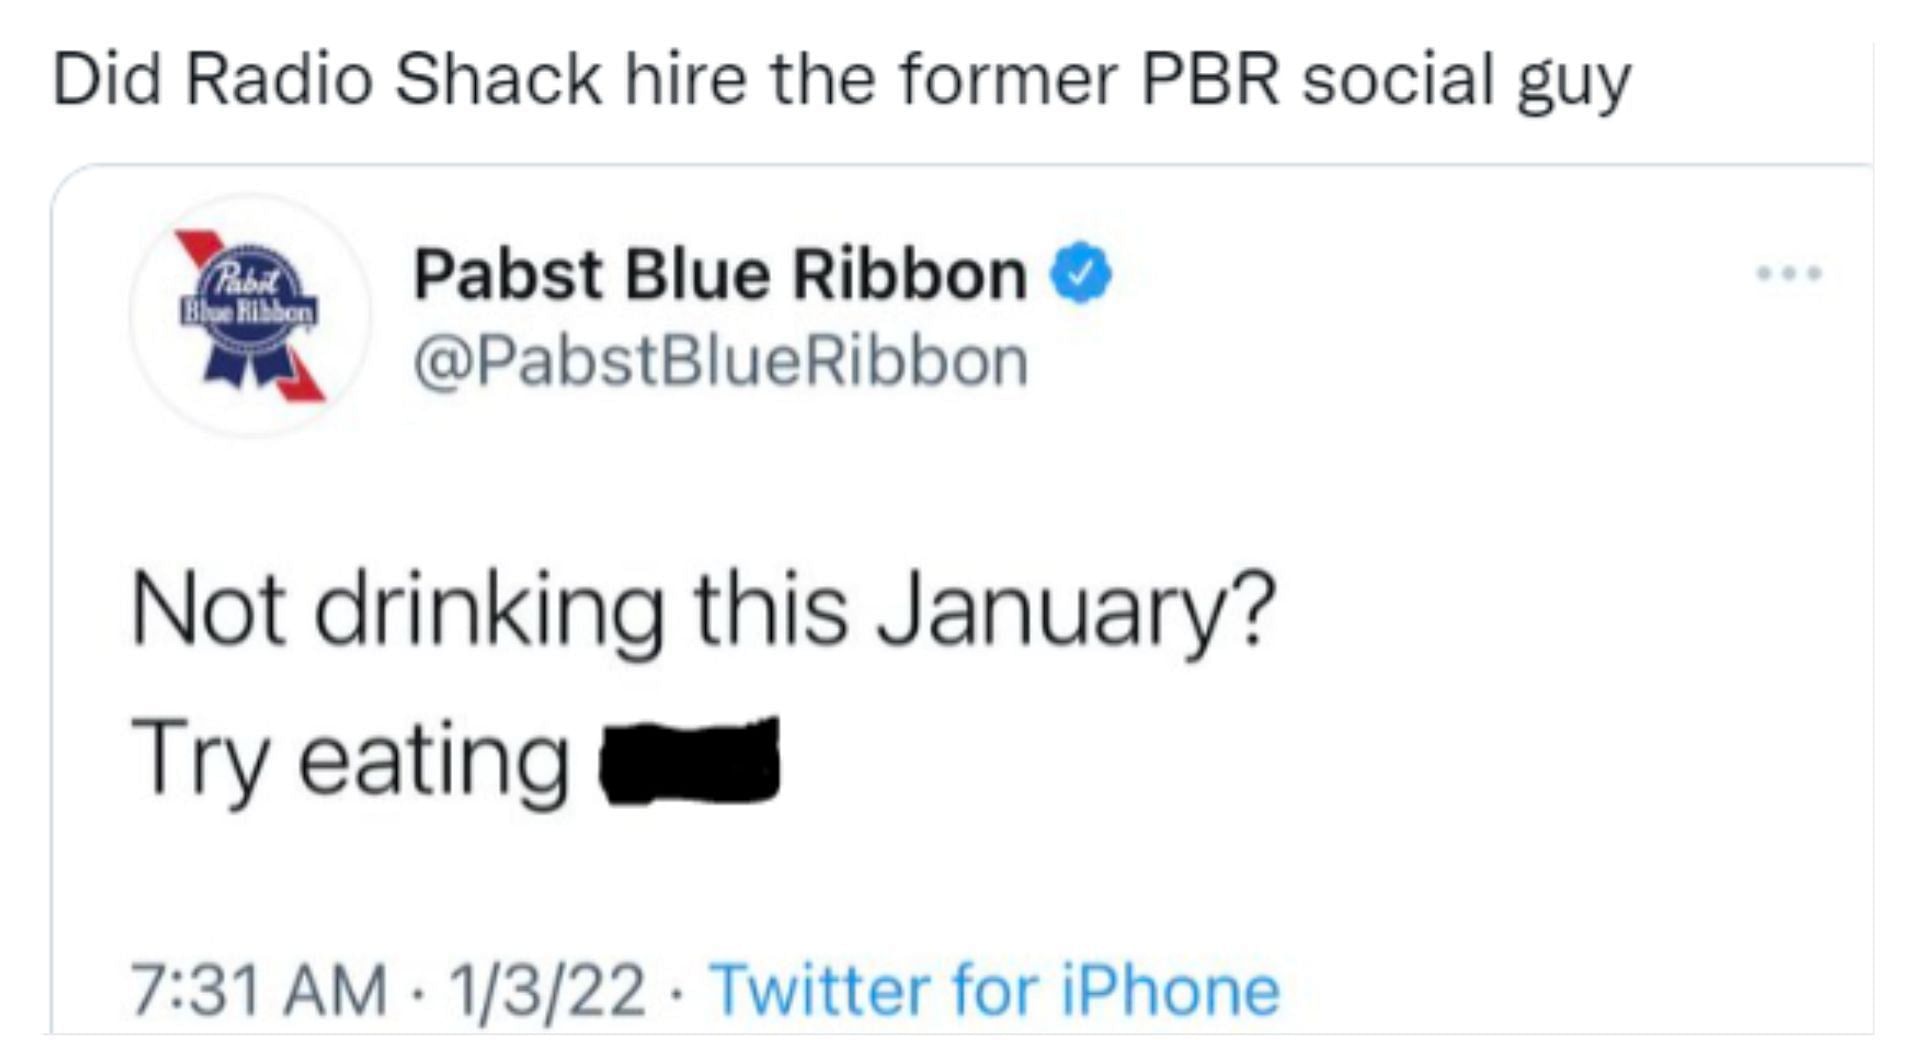 Un caso similar de tweets extraños ocurrió con la compañía de bebidas Pabst Blue Ribbon (imagen a través de Twitter/Pabst Blue Ribbon)